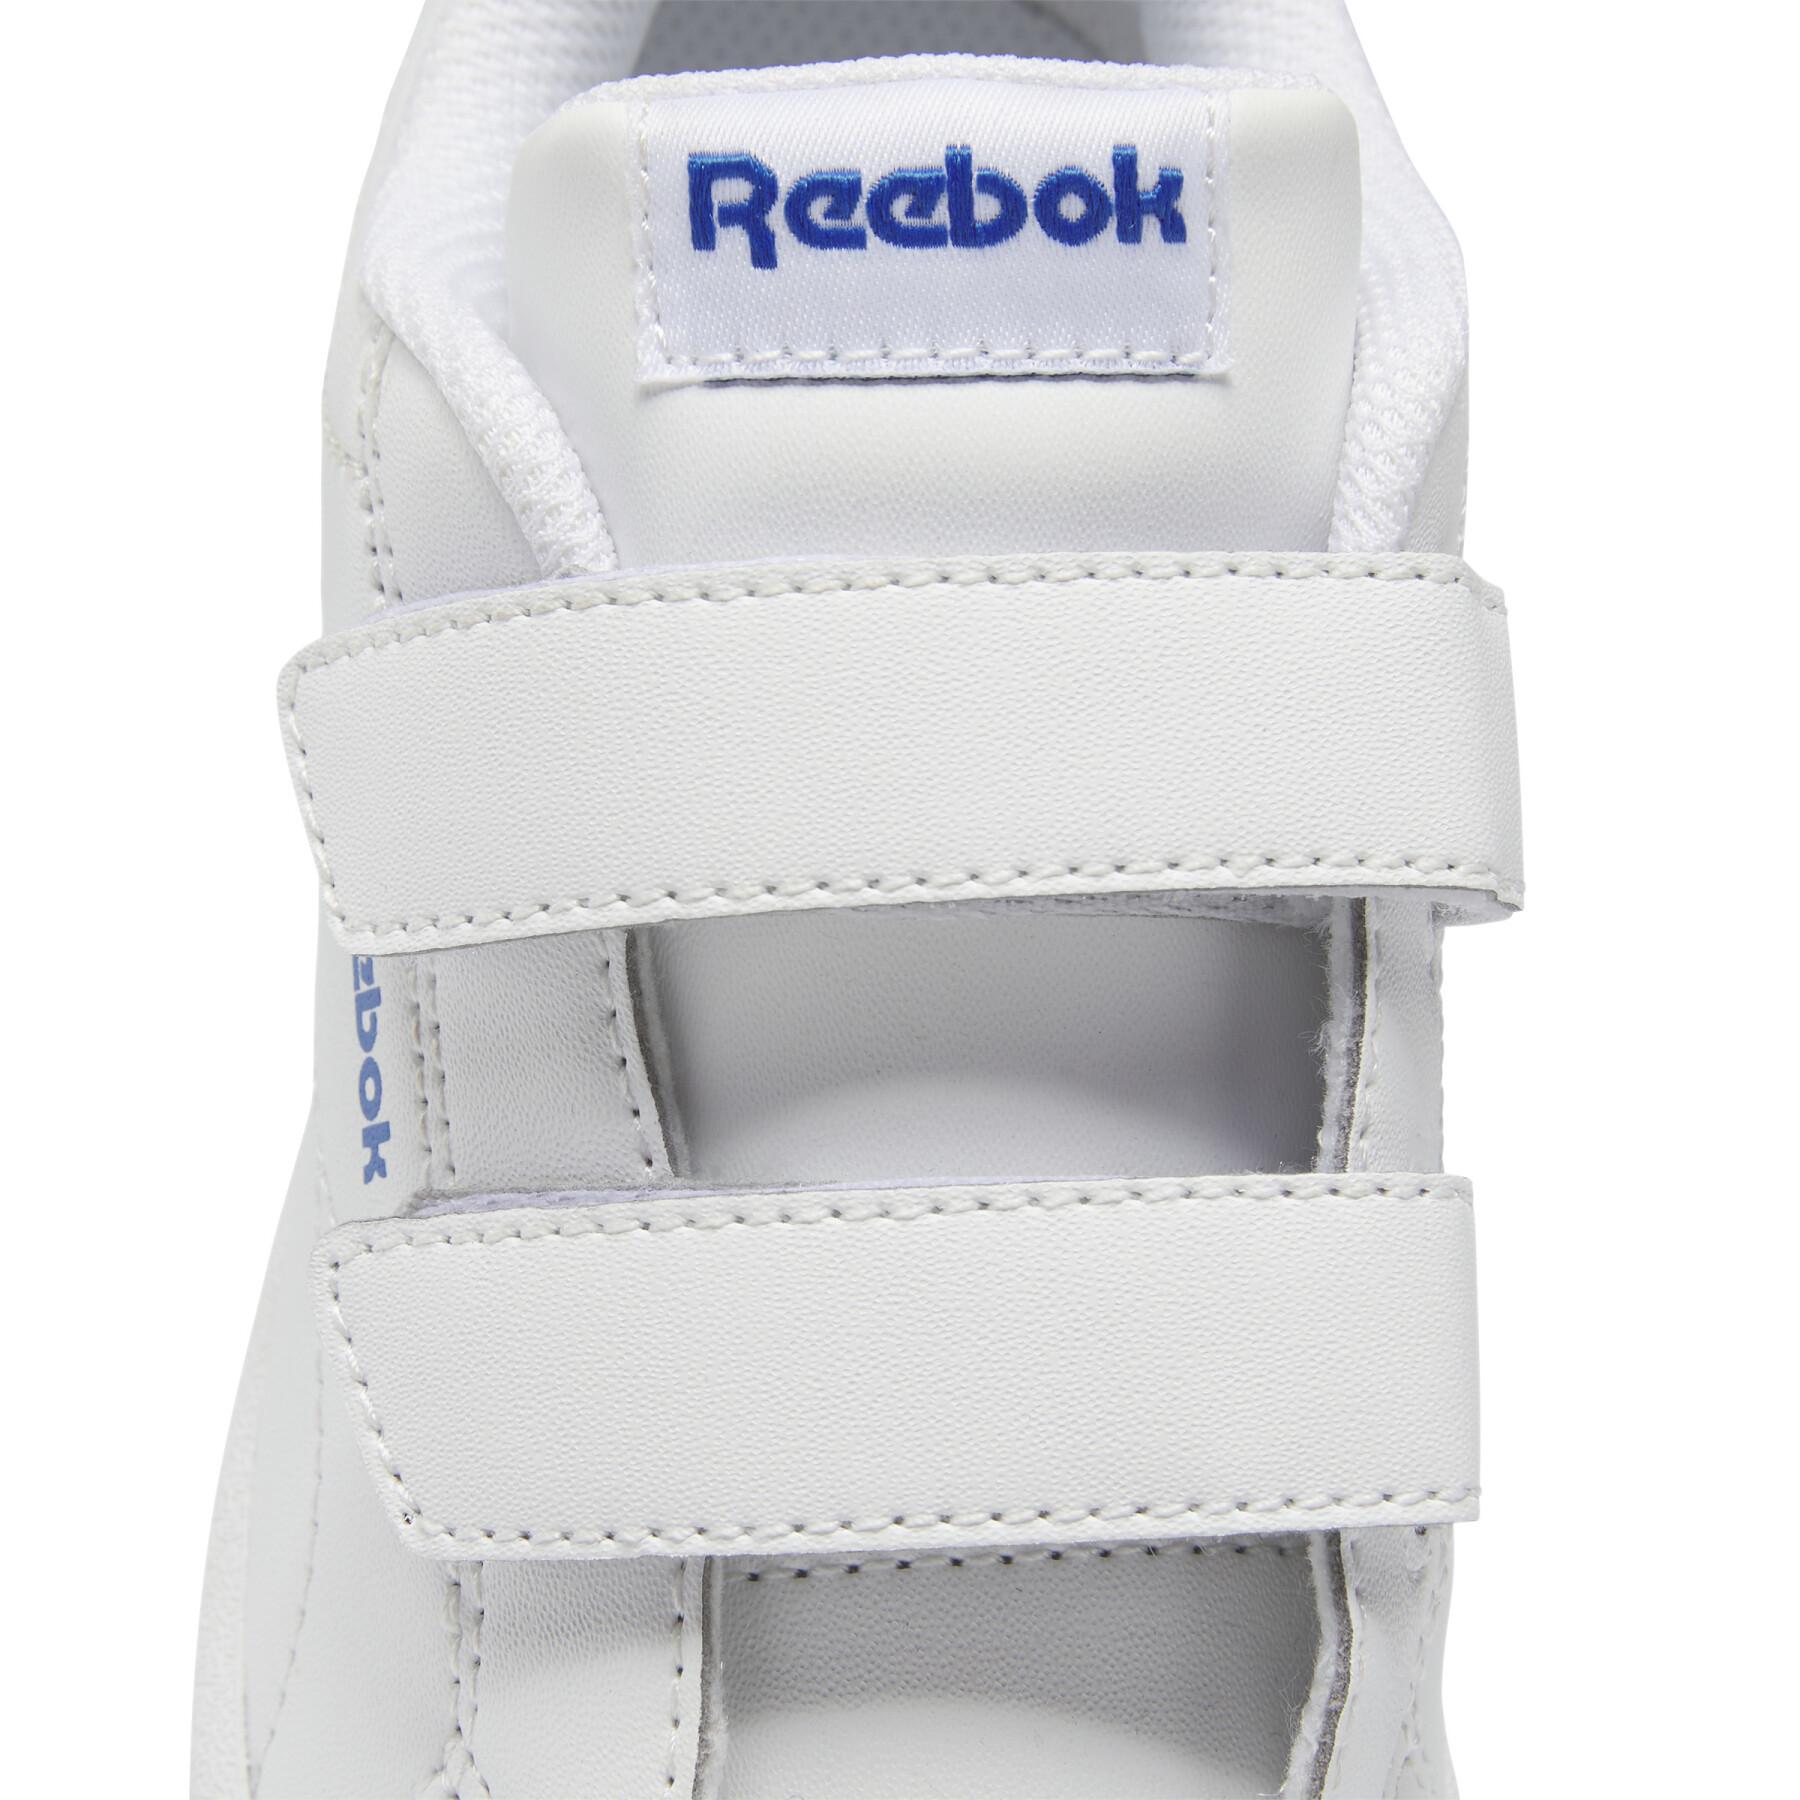 Sneakers Kind Reebok Royal Complete Cln 2